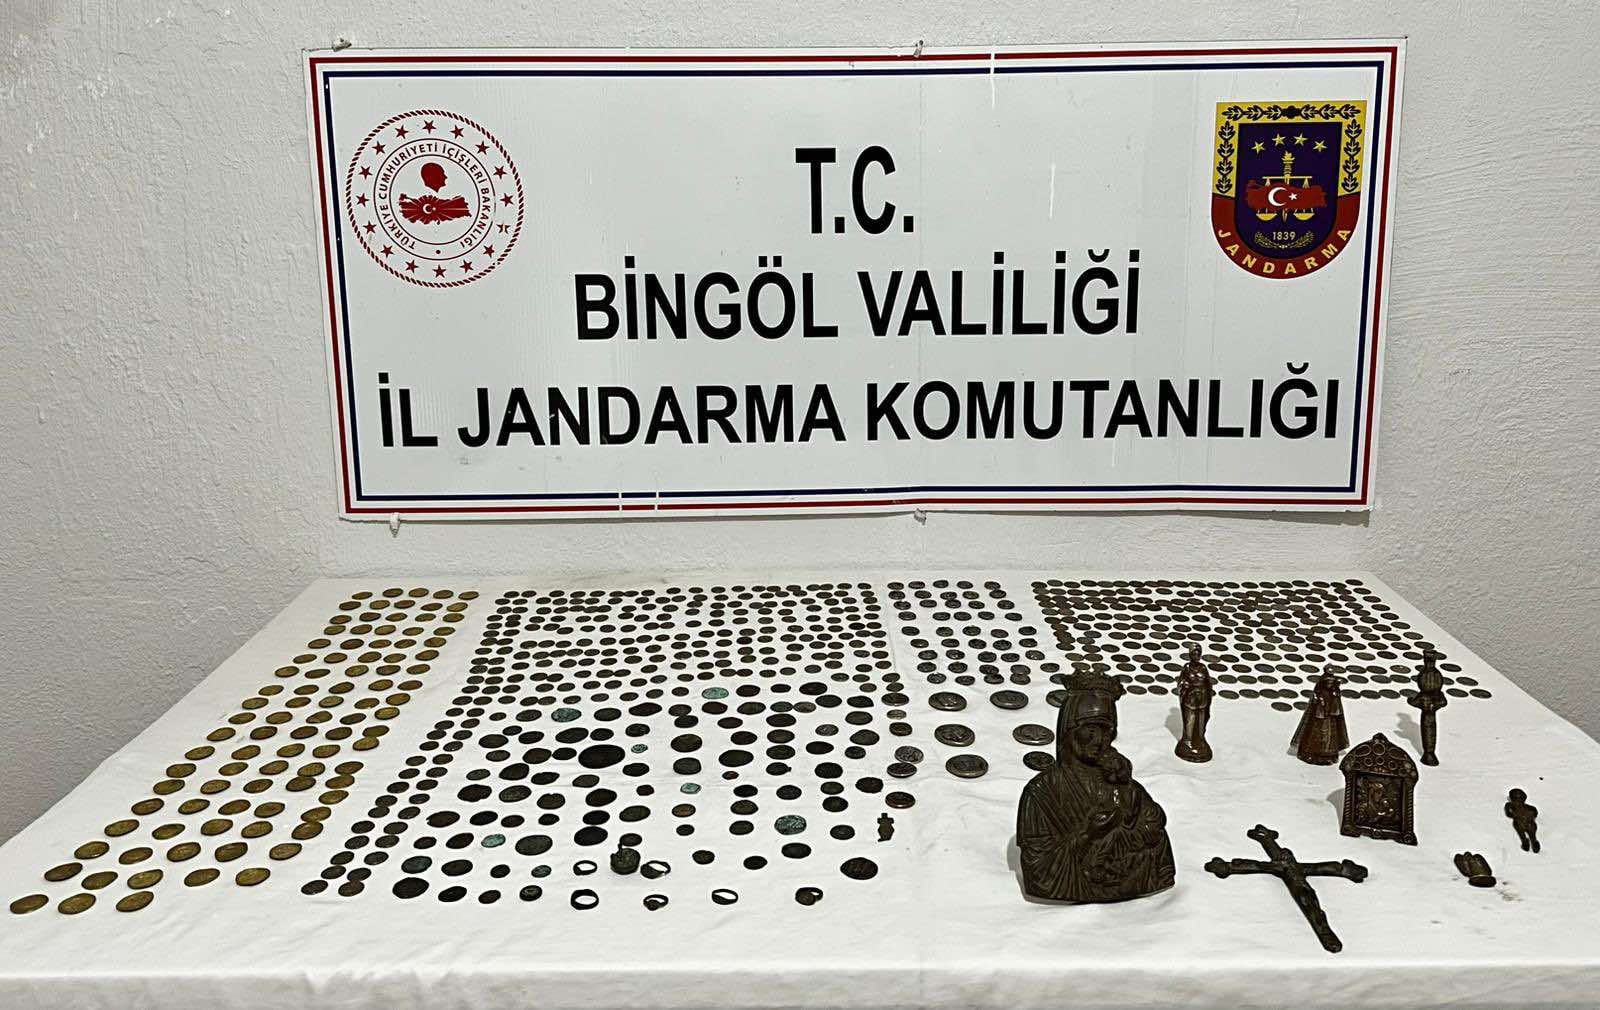 Bingöl'de tarihi eser kaçakçılığı operasyonu: 734 adet tarihi eser ele geçirildi